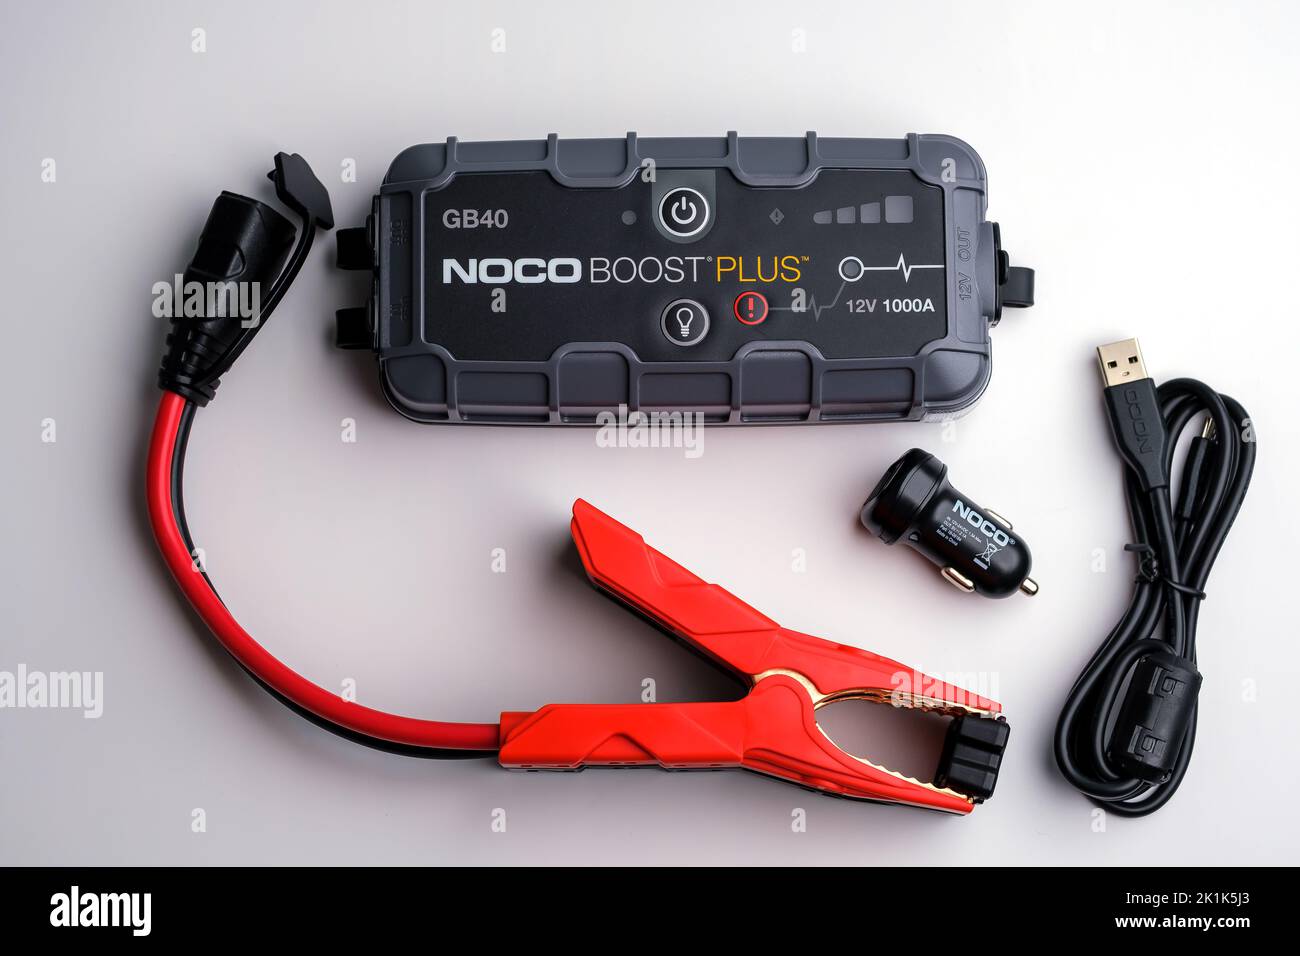 Car Jump Starter Noco Boost Plus GB40 e il contenuto della confezione del prodotto. Kit di avviamento batteria per auto. Stafford, Regno Unito, 19 settembre 2022. Foto Stock